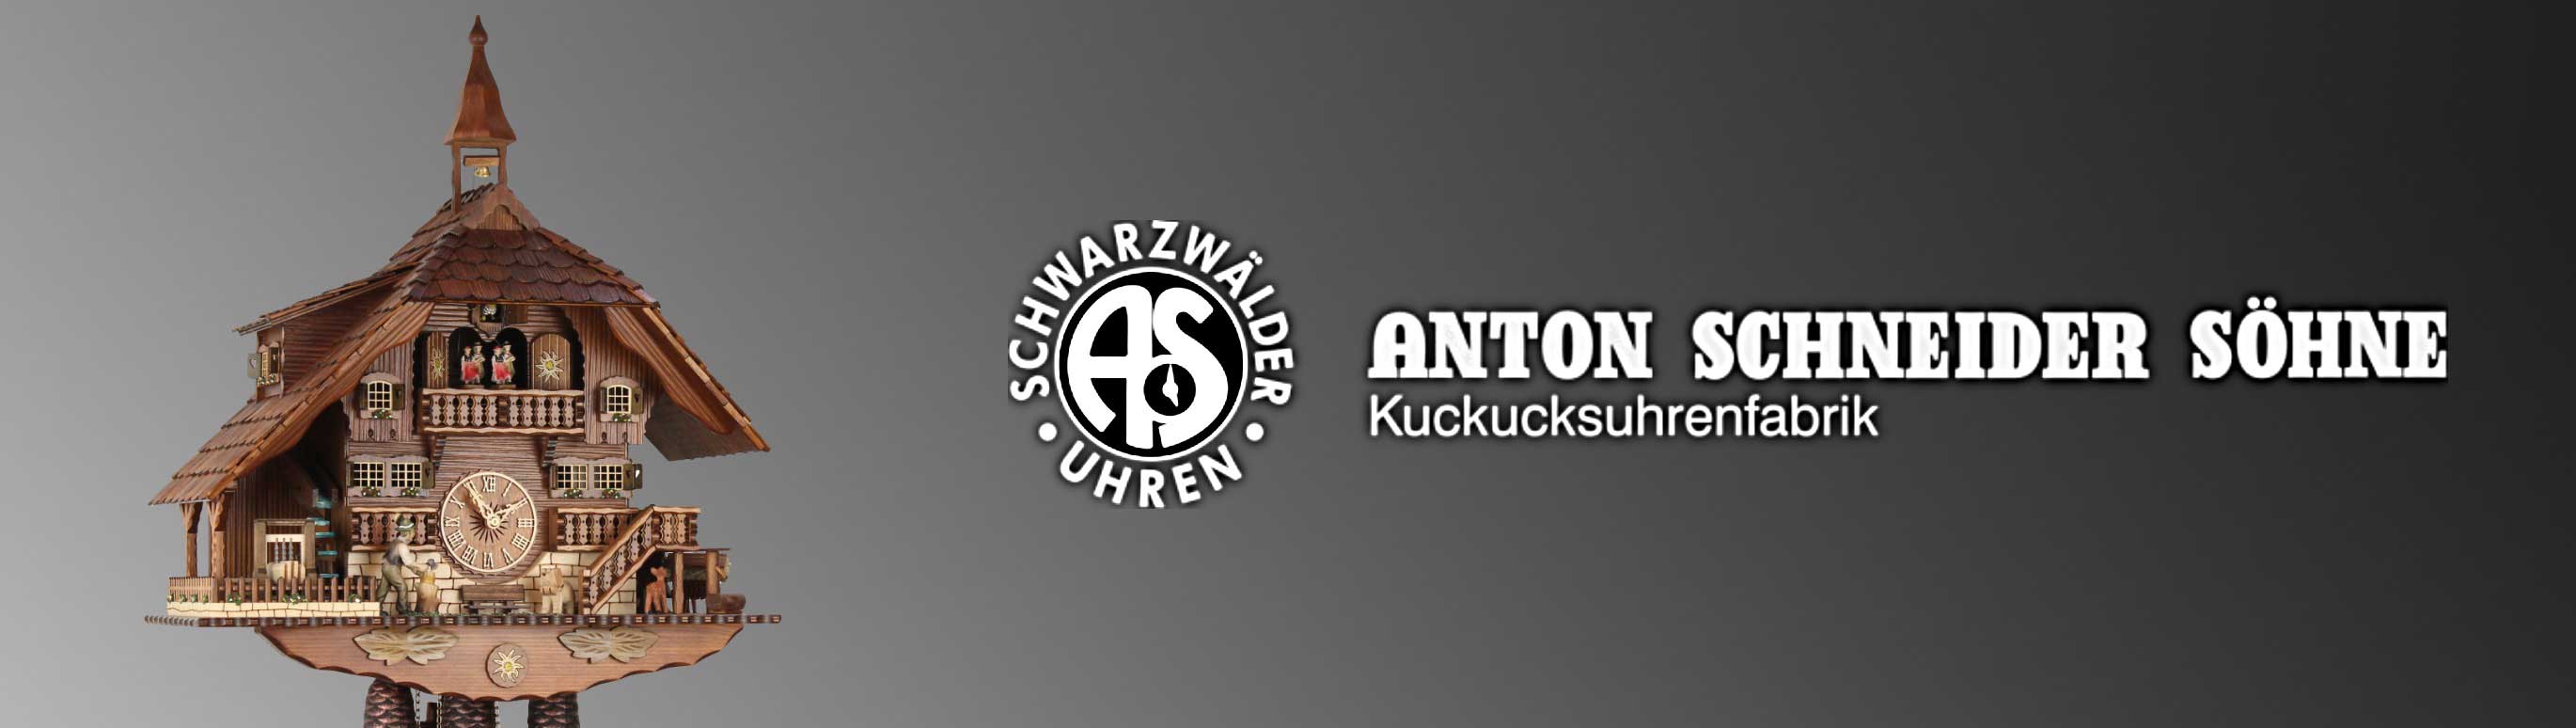 Schneider-Anton-Soehne